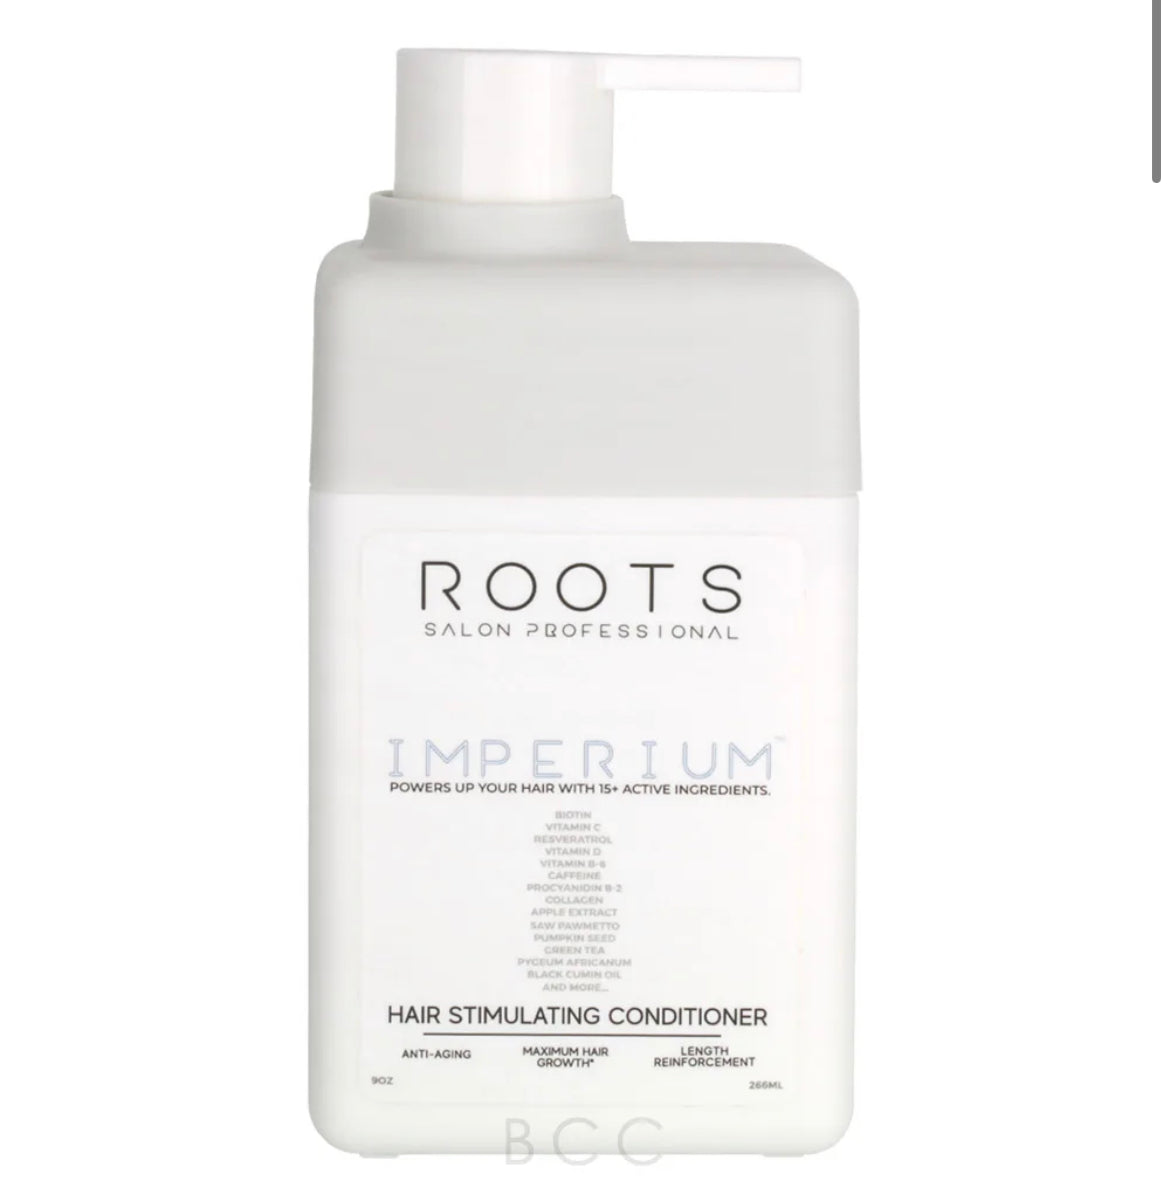 ROOTS Imperium Hair stimulating conditioner